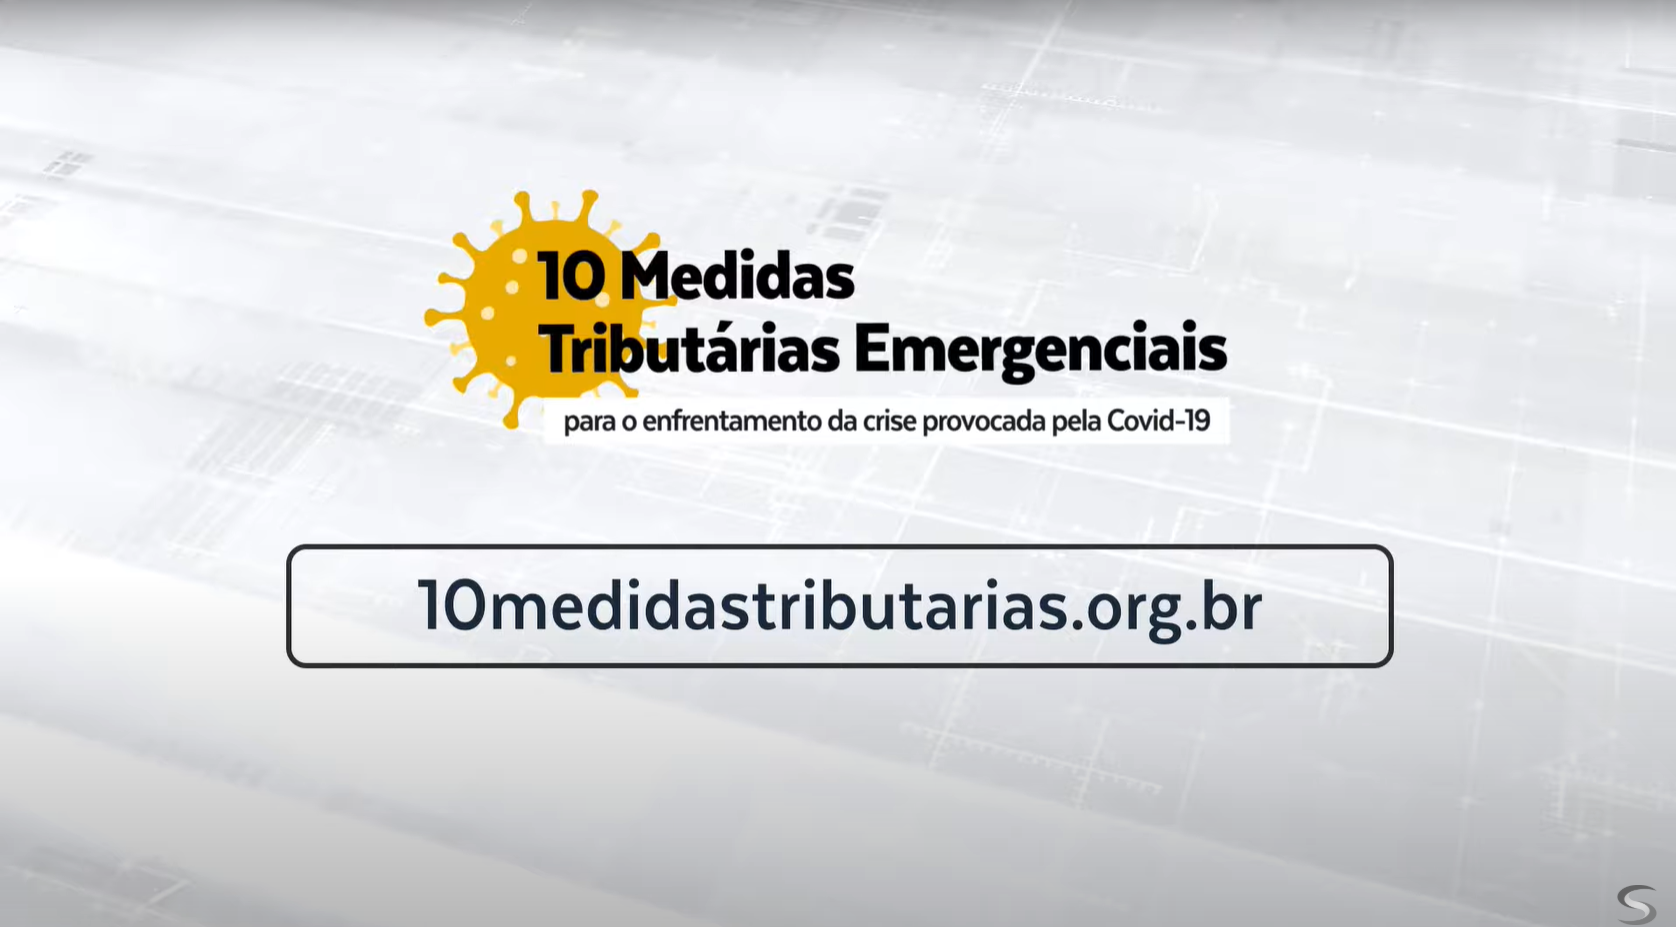 Webinar 3 - 10 Medidas Tributárias Emergenciais